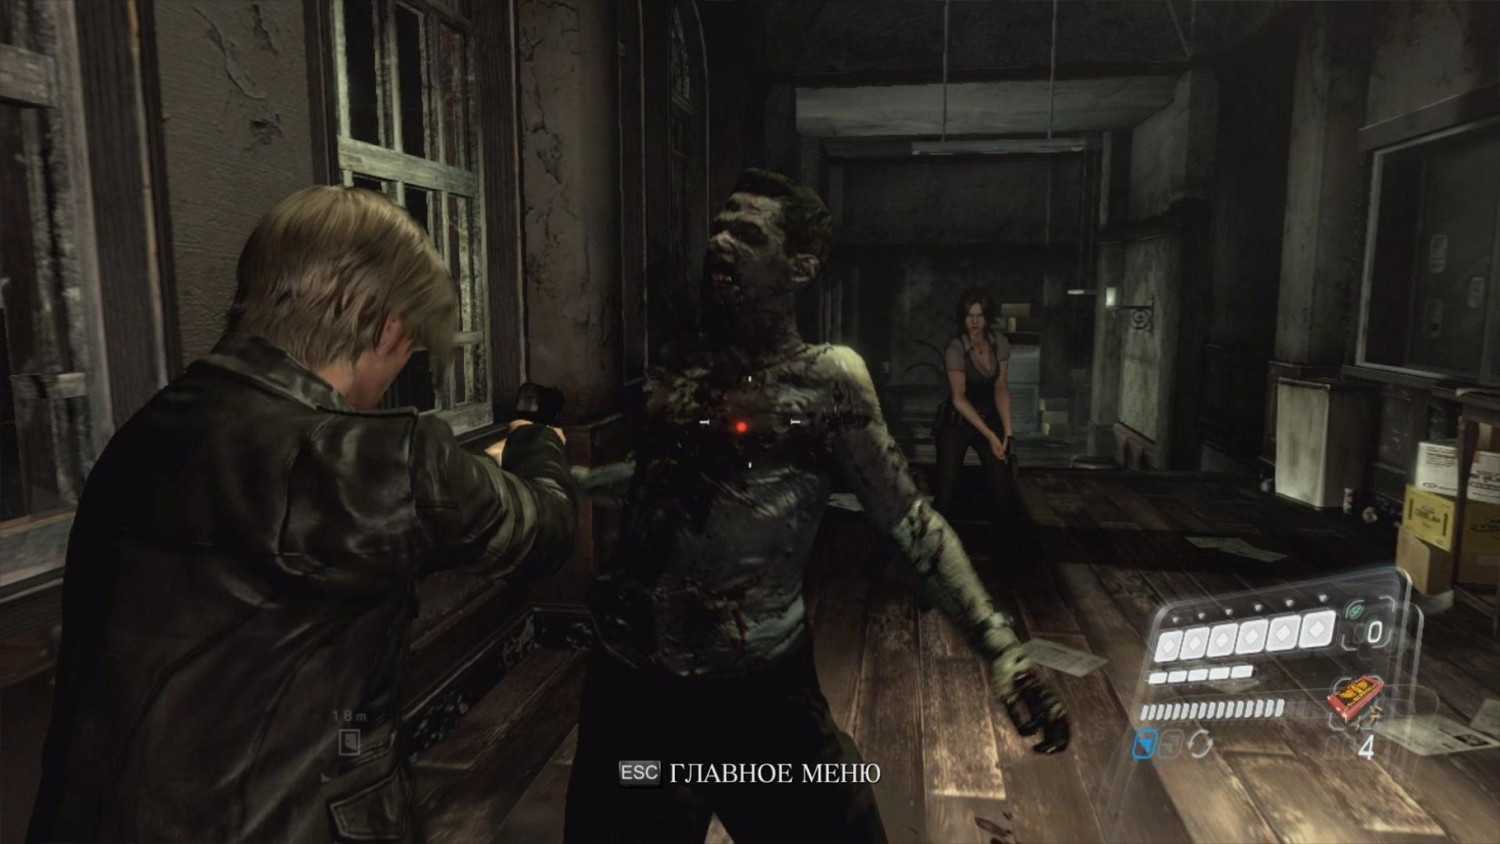 Скриншот 1 к игре Resident Evil 6: Complete Pack (Capcom) [v 1.0.6 + DLC] (RUS|ENG) [RePack] от xatab